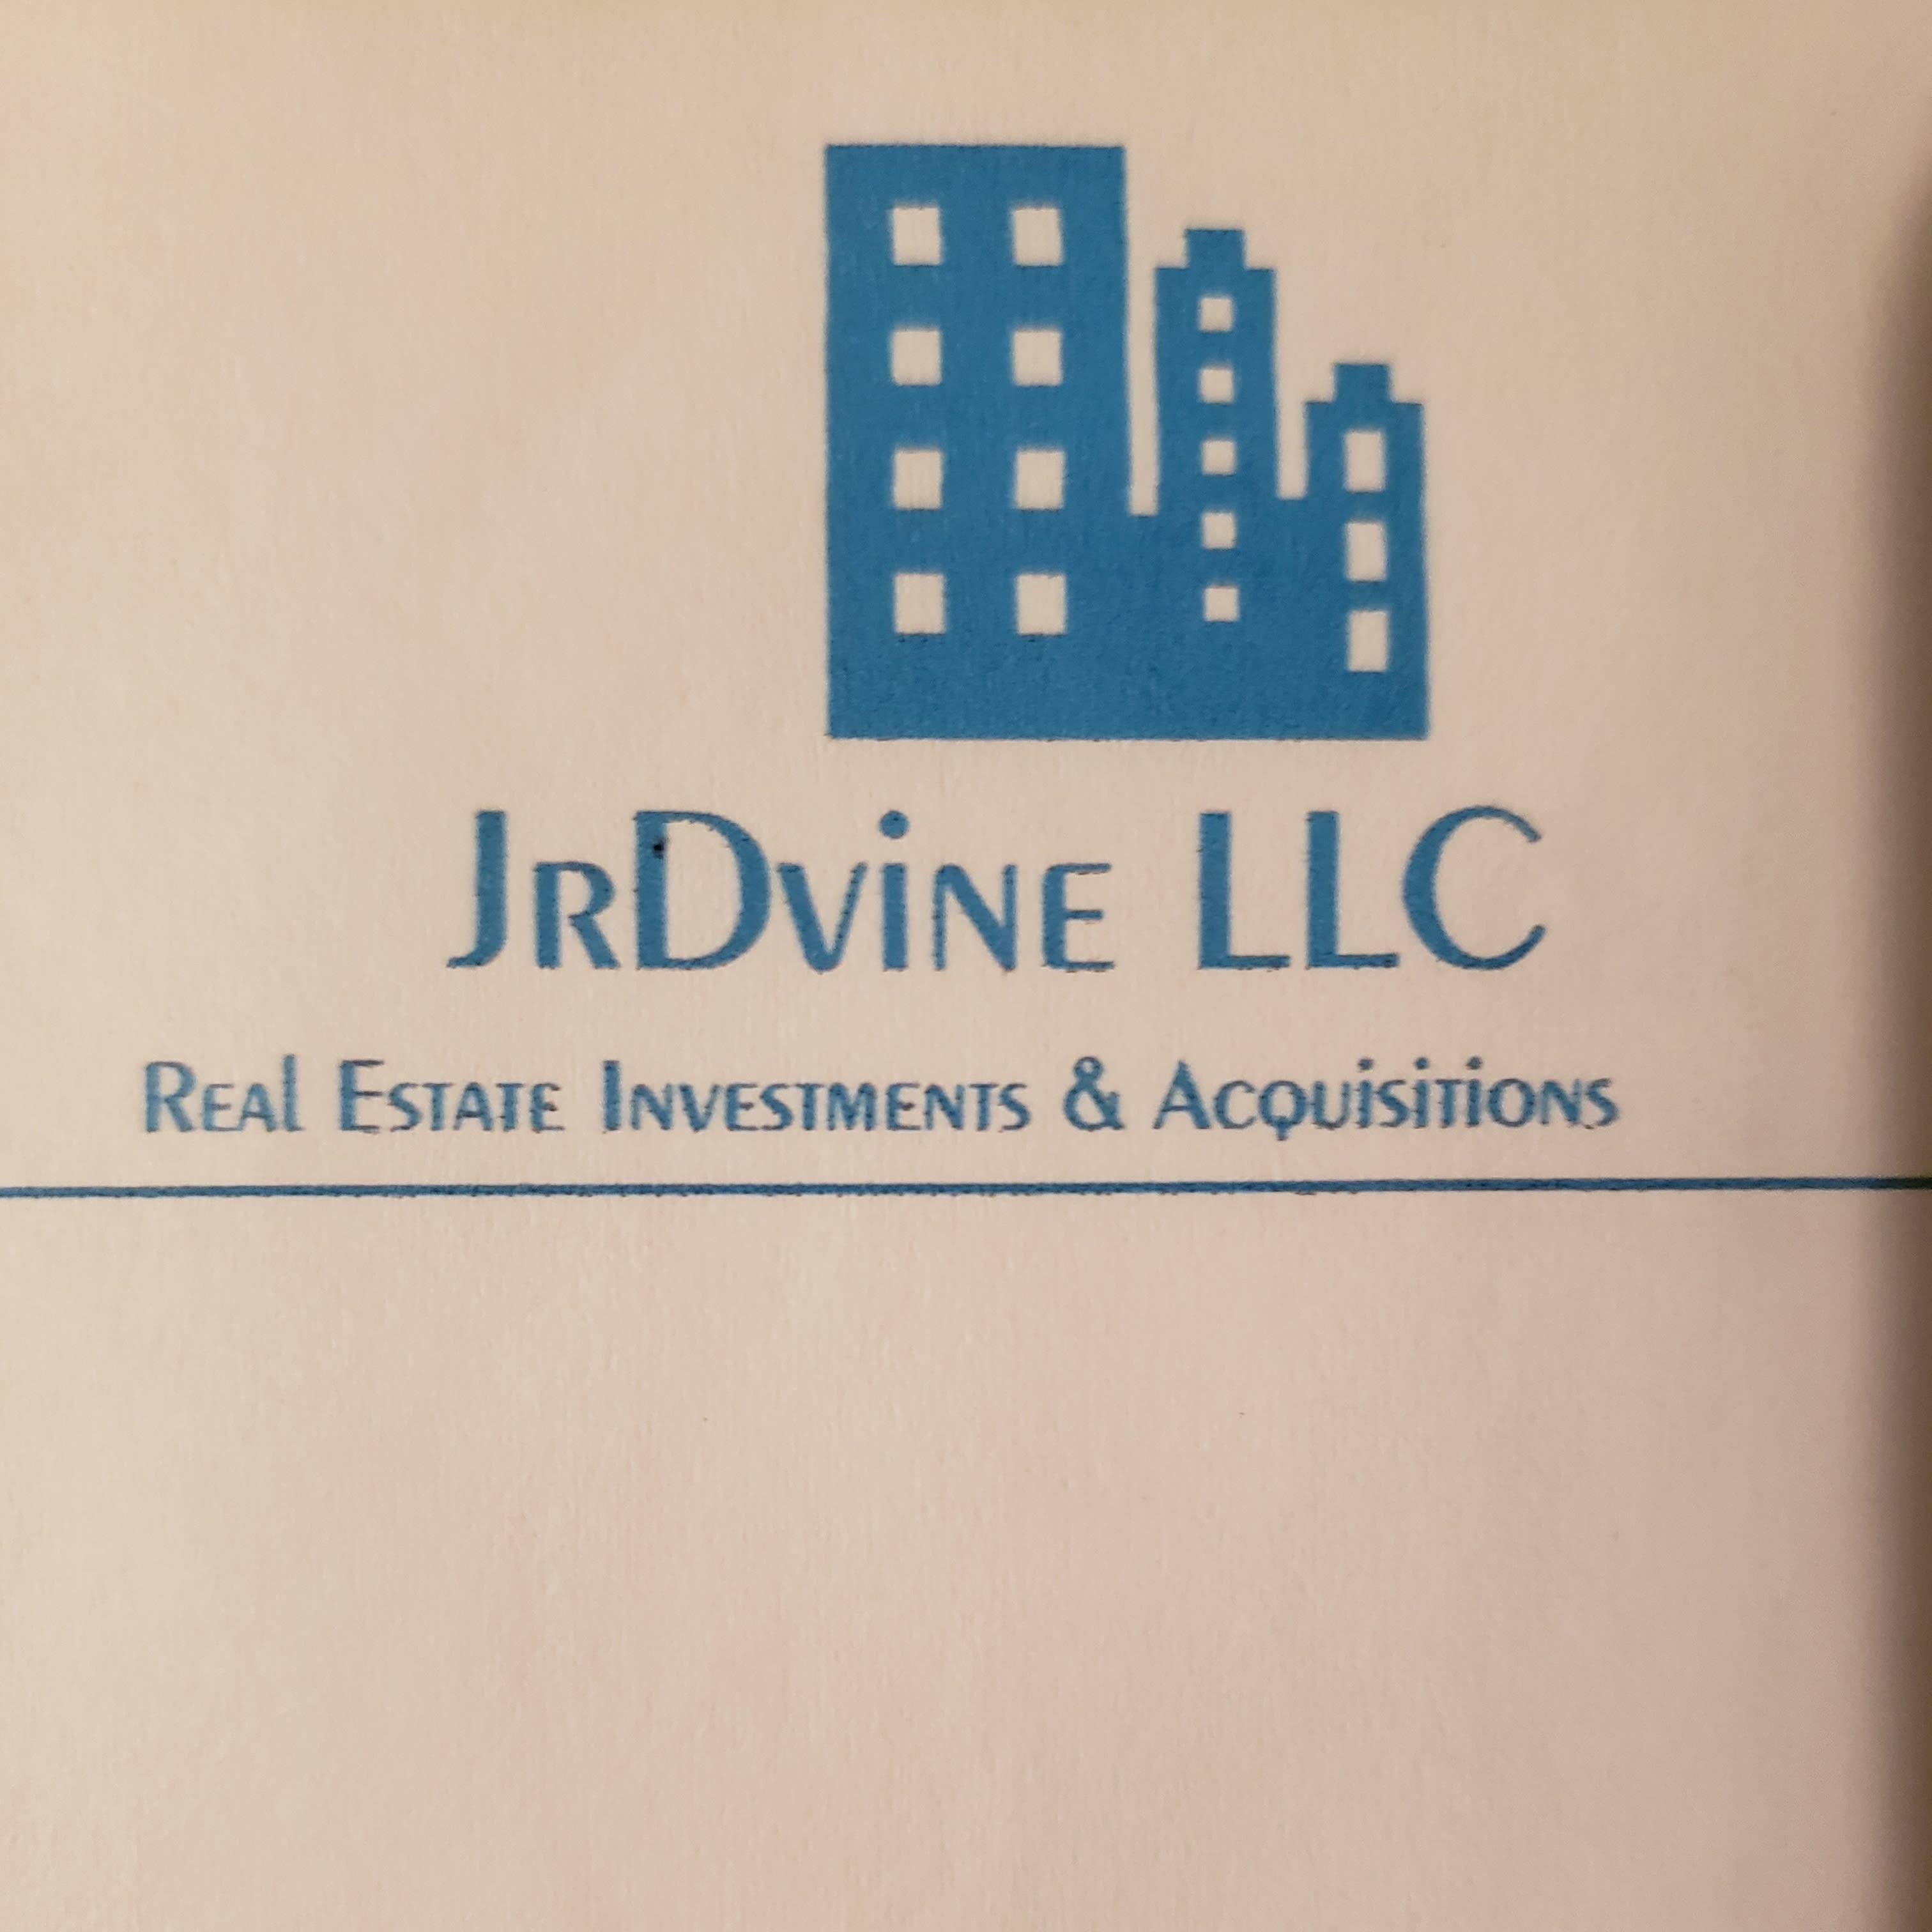 JR Dvine LLC